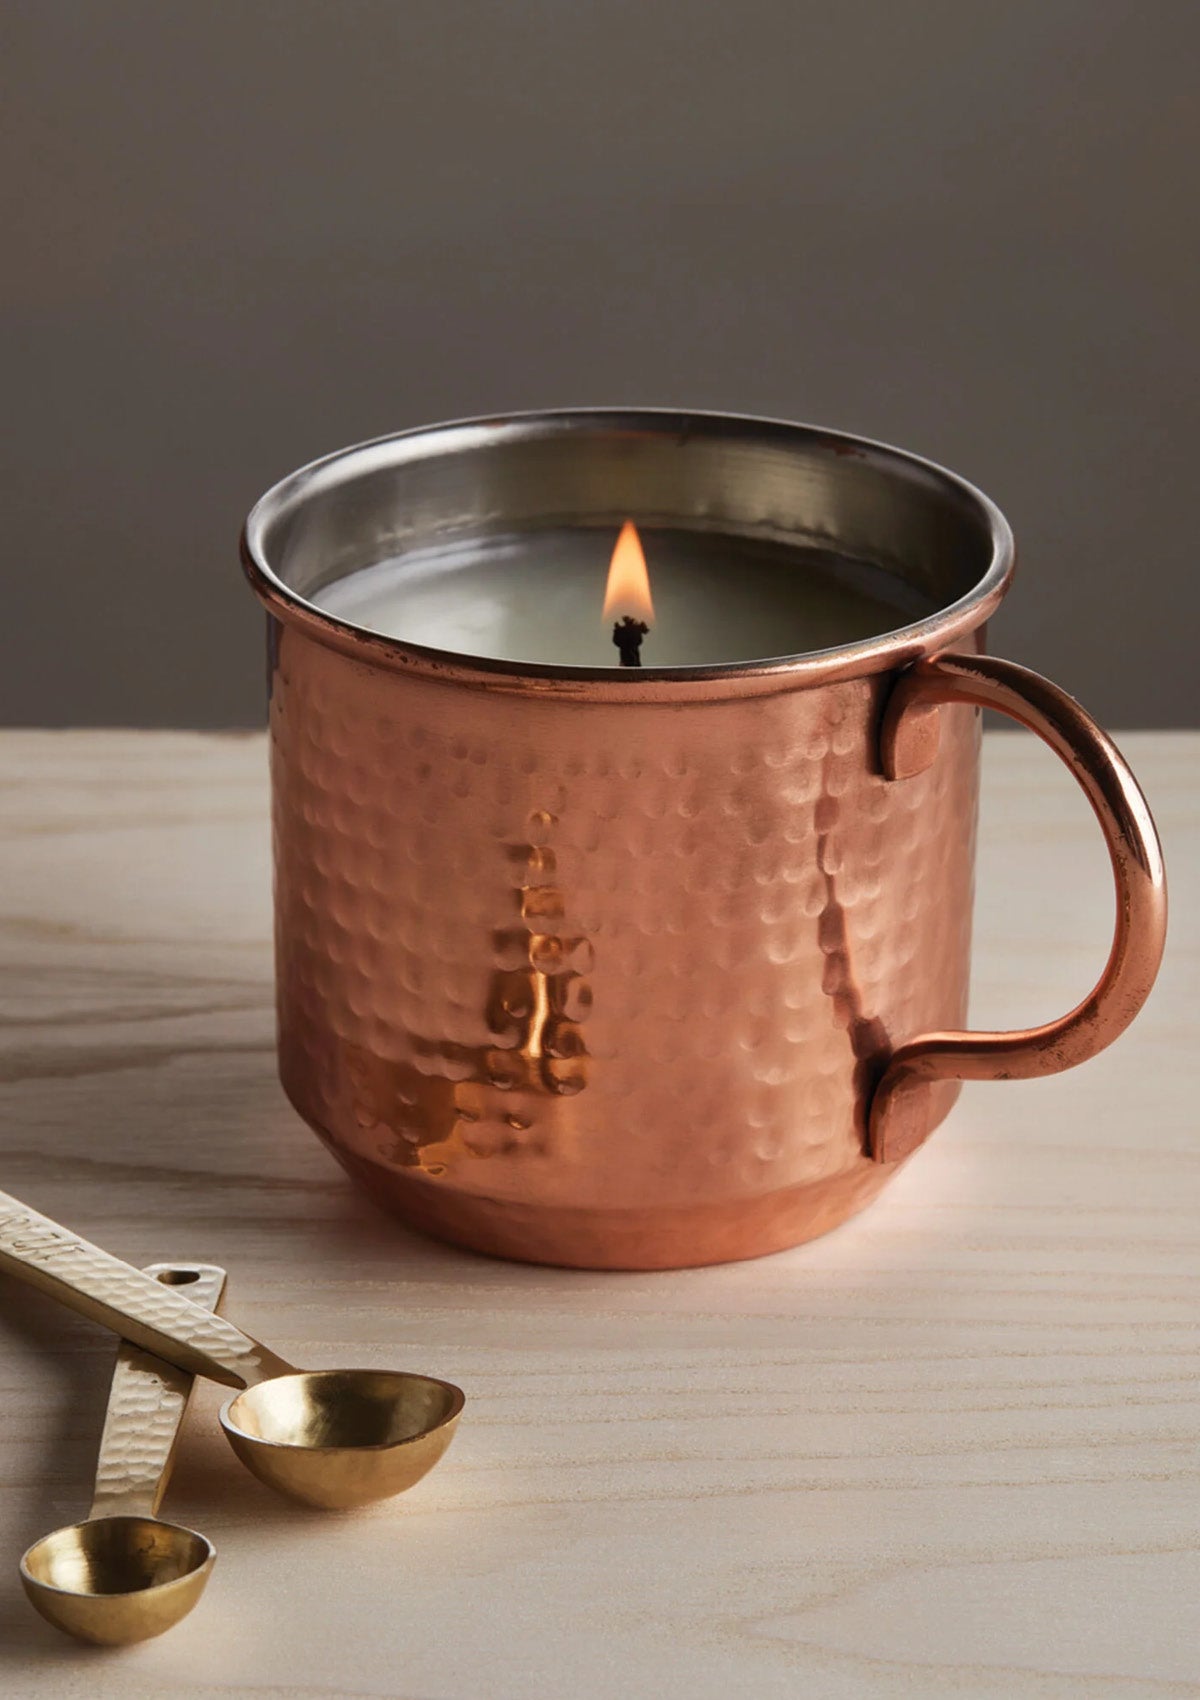 Simmered Cider Copper Mug Candle